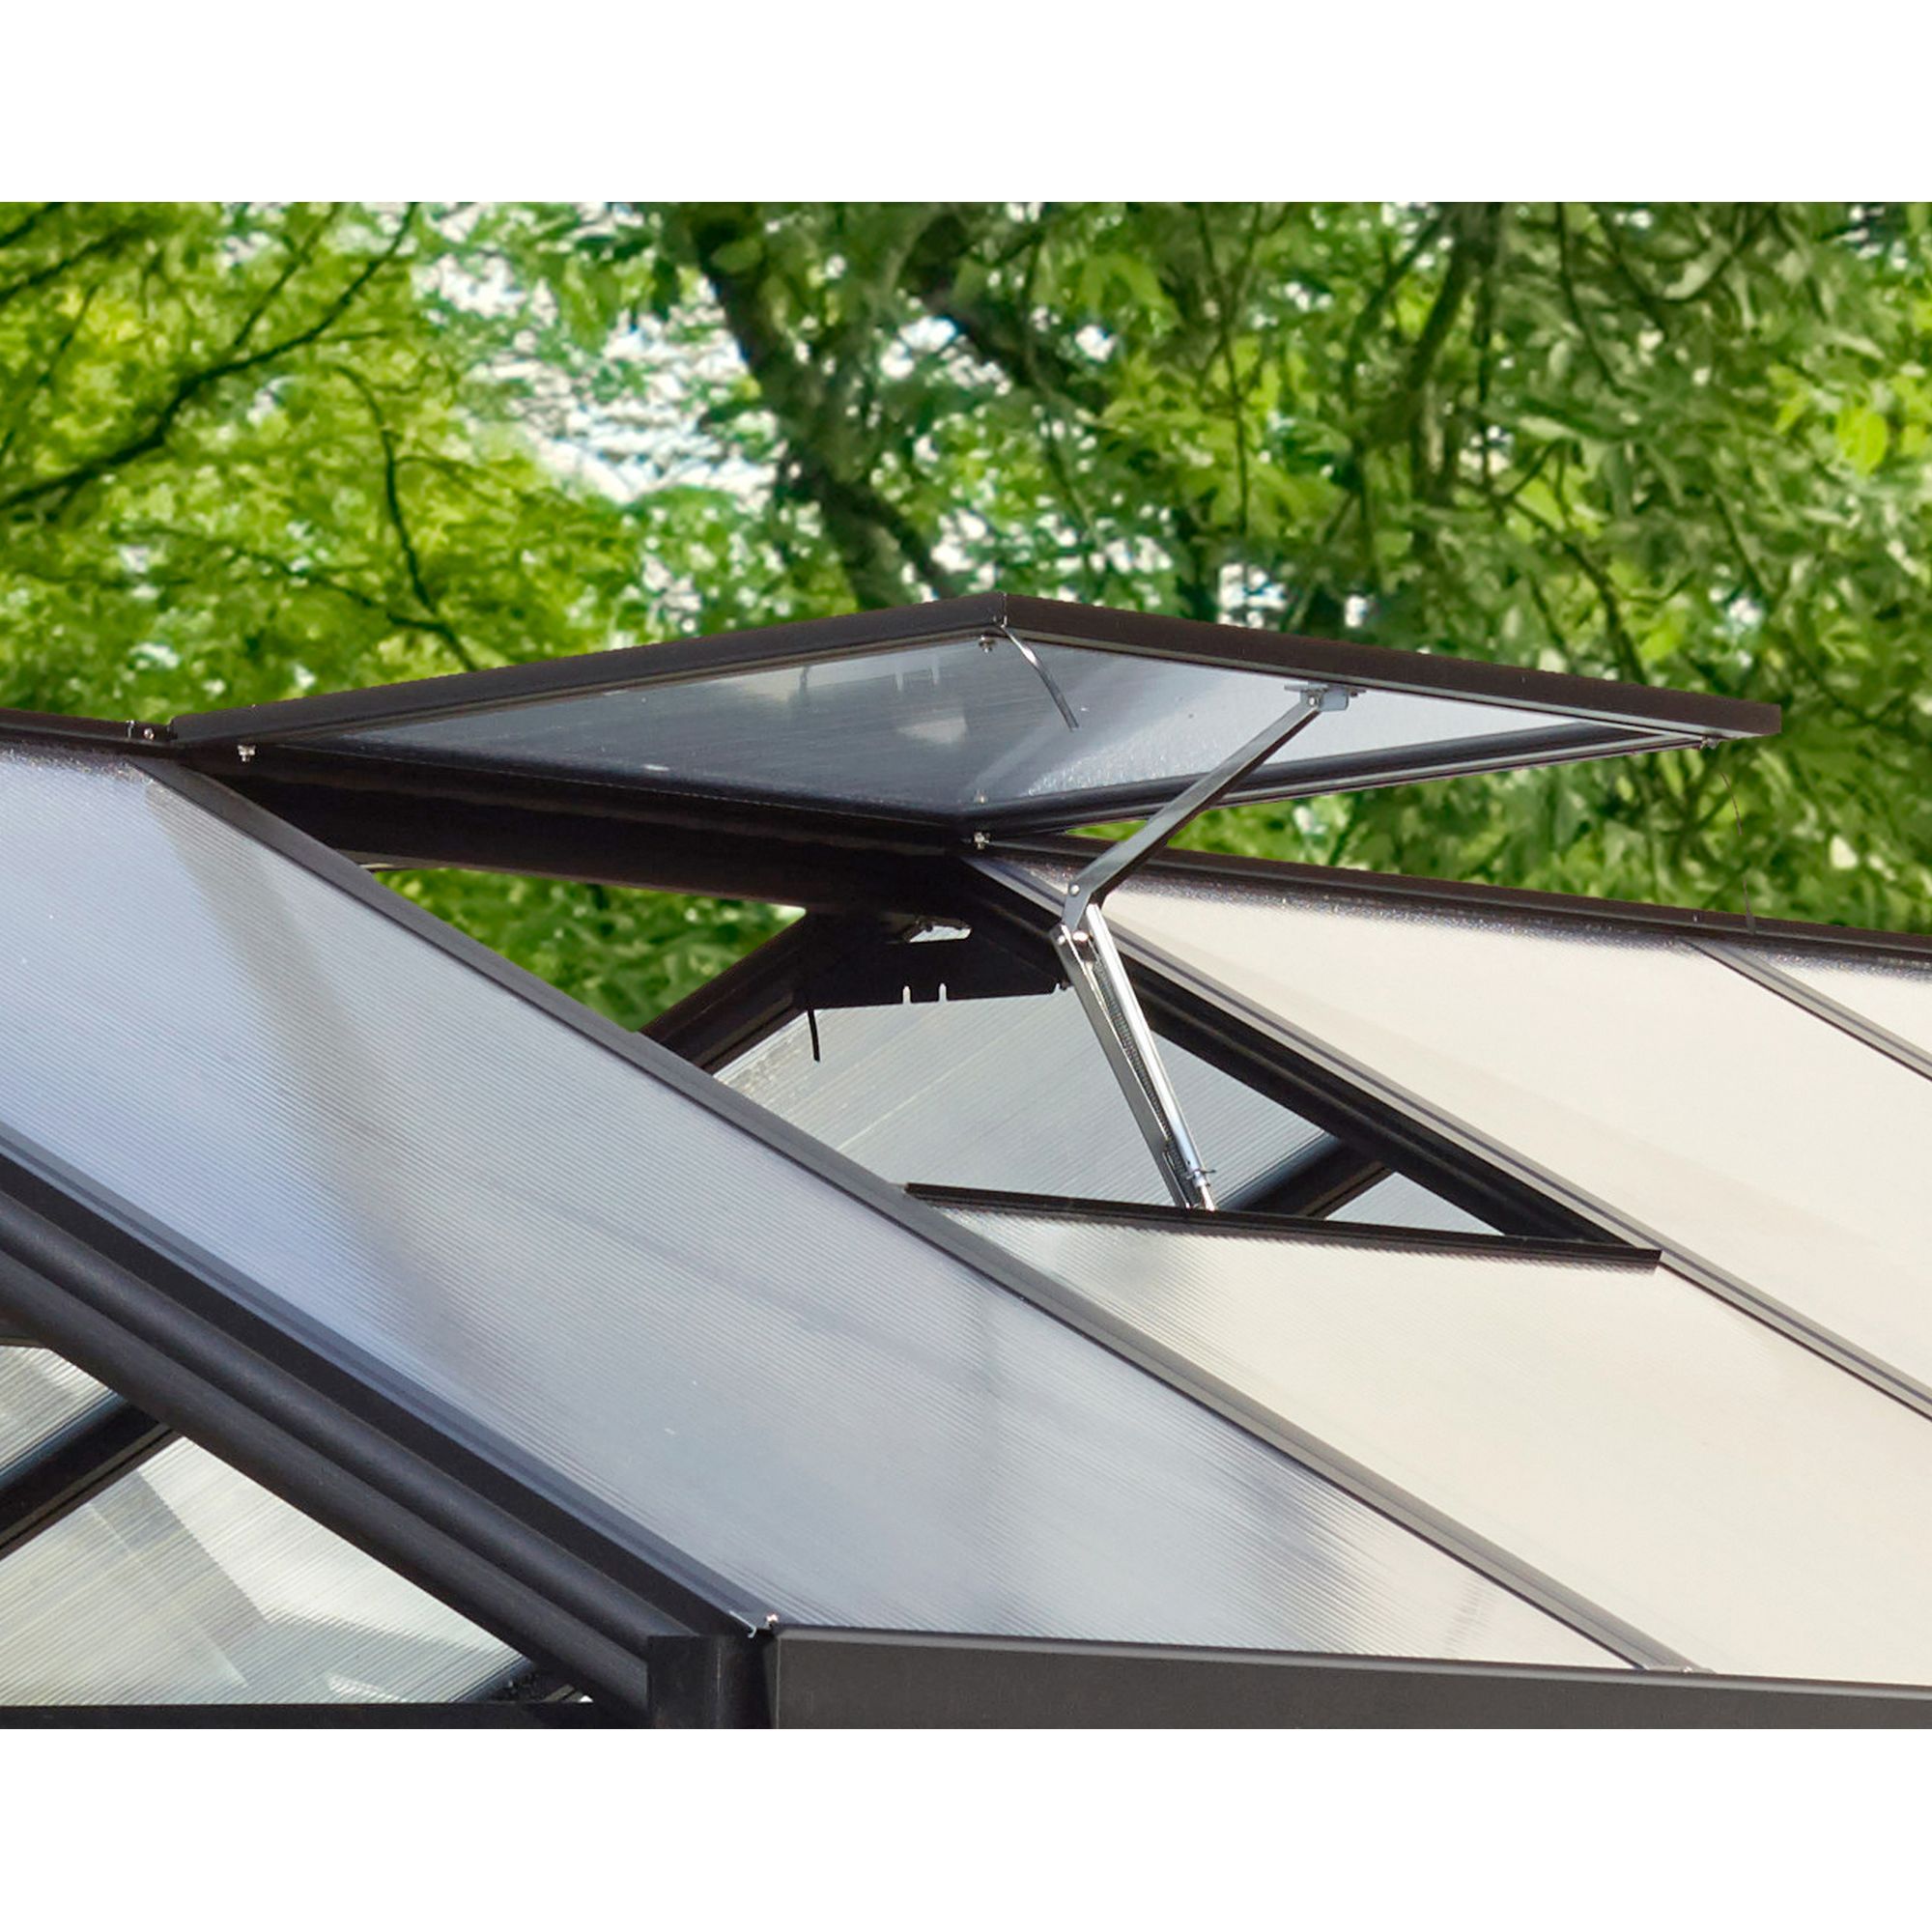 Dachfenster für Gewächshaus 'Zeus' Aluminium schwarz 73 x 70 cm + product picture